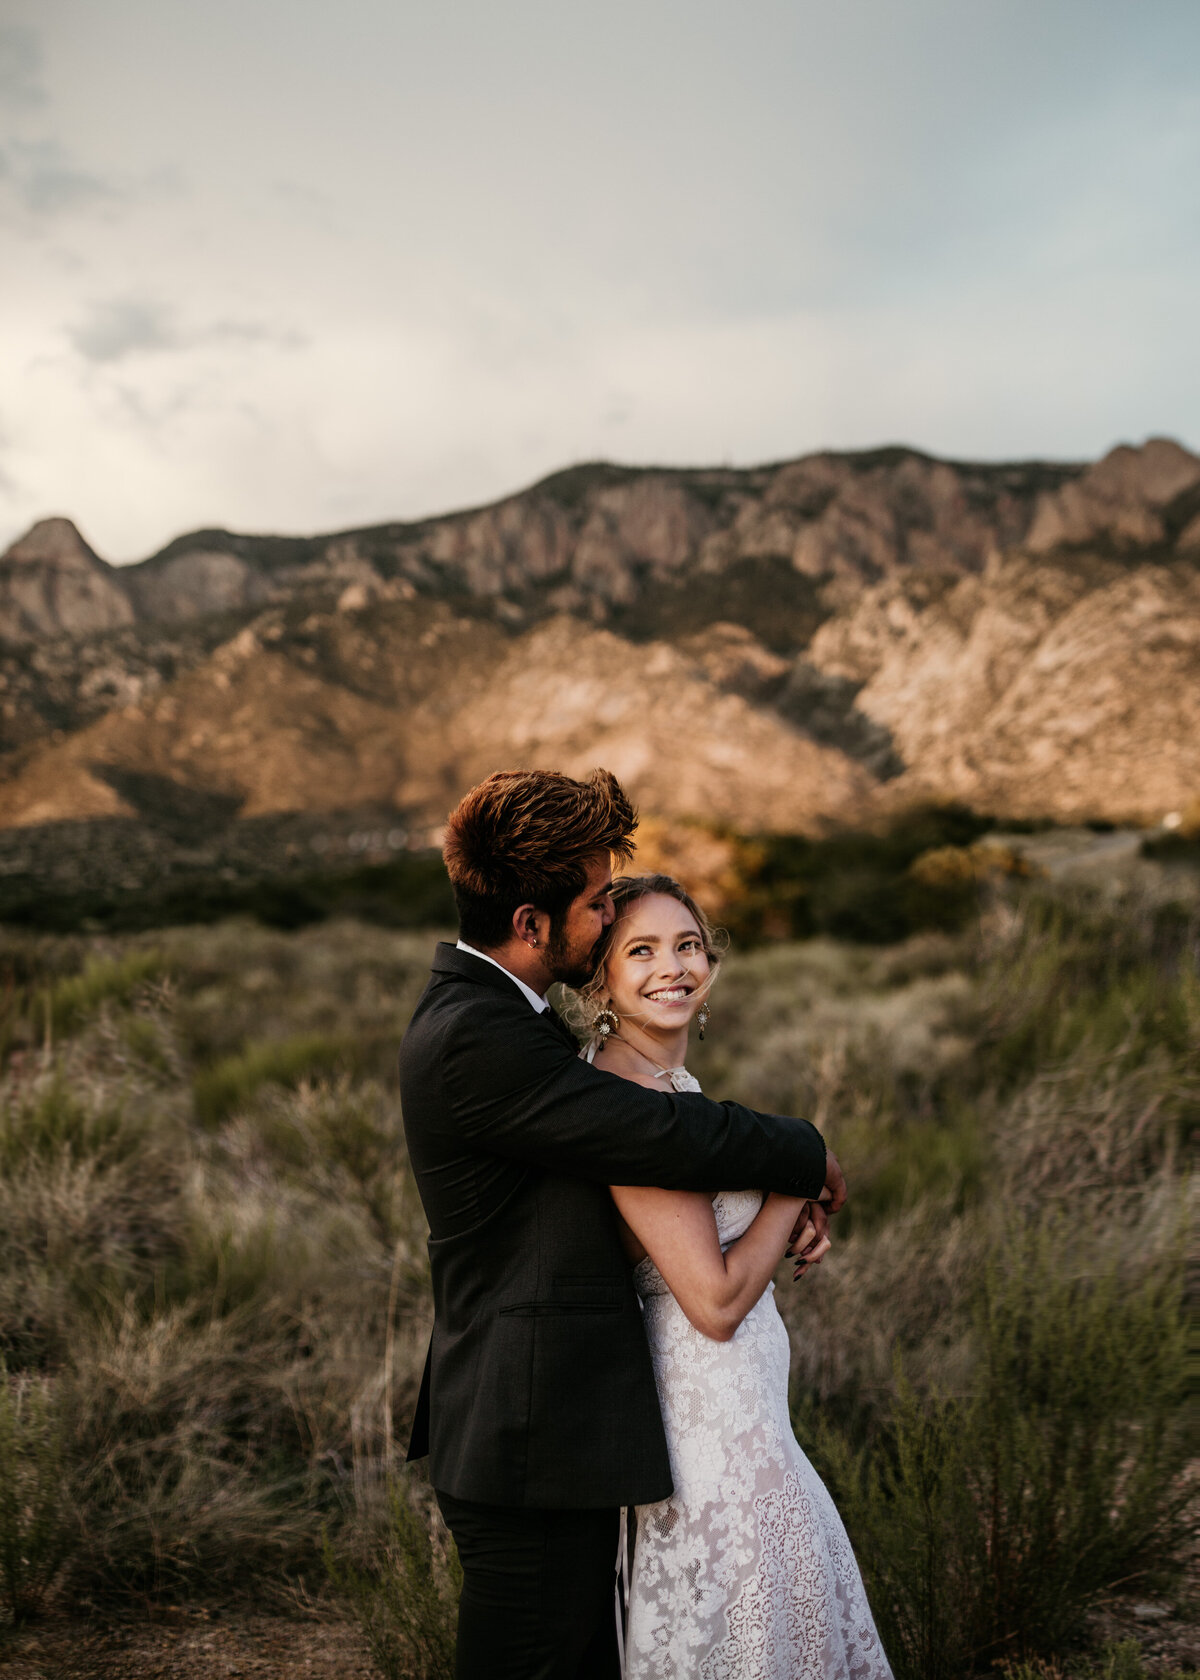 groom kissing bride in desert while she smiles